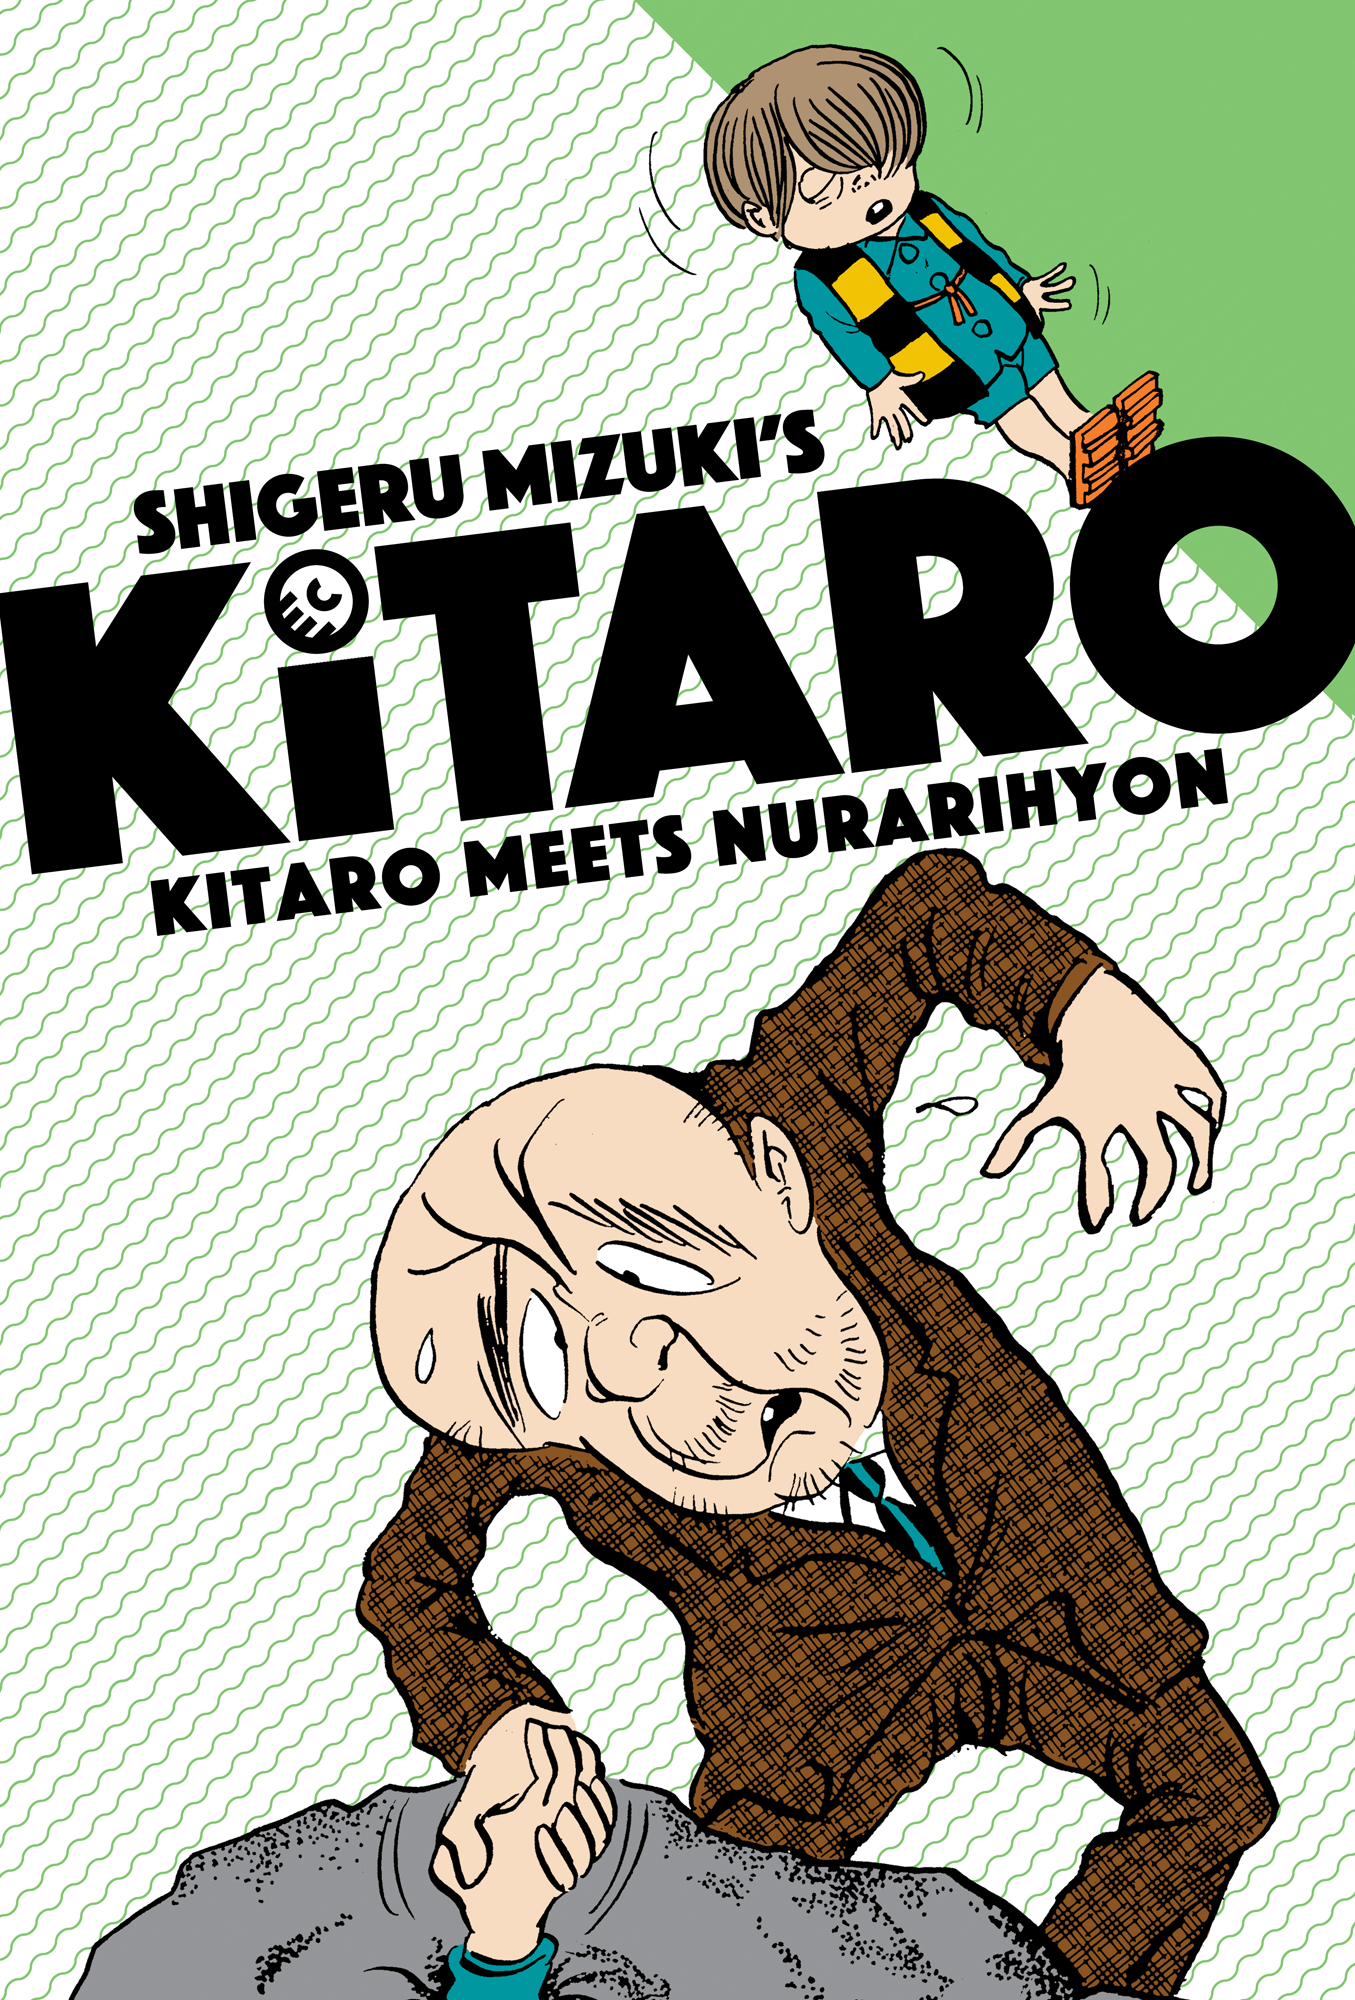 Kitaro Manga Volume 2 Meets Nurarihyon